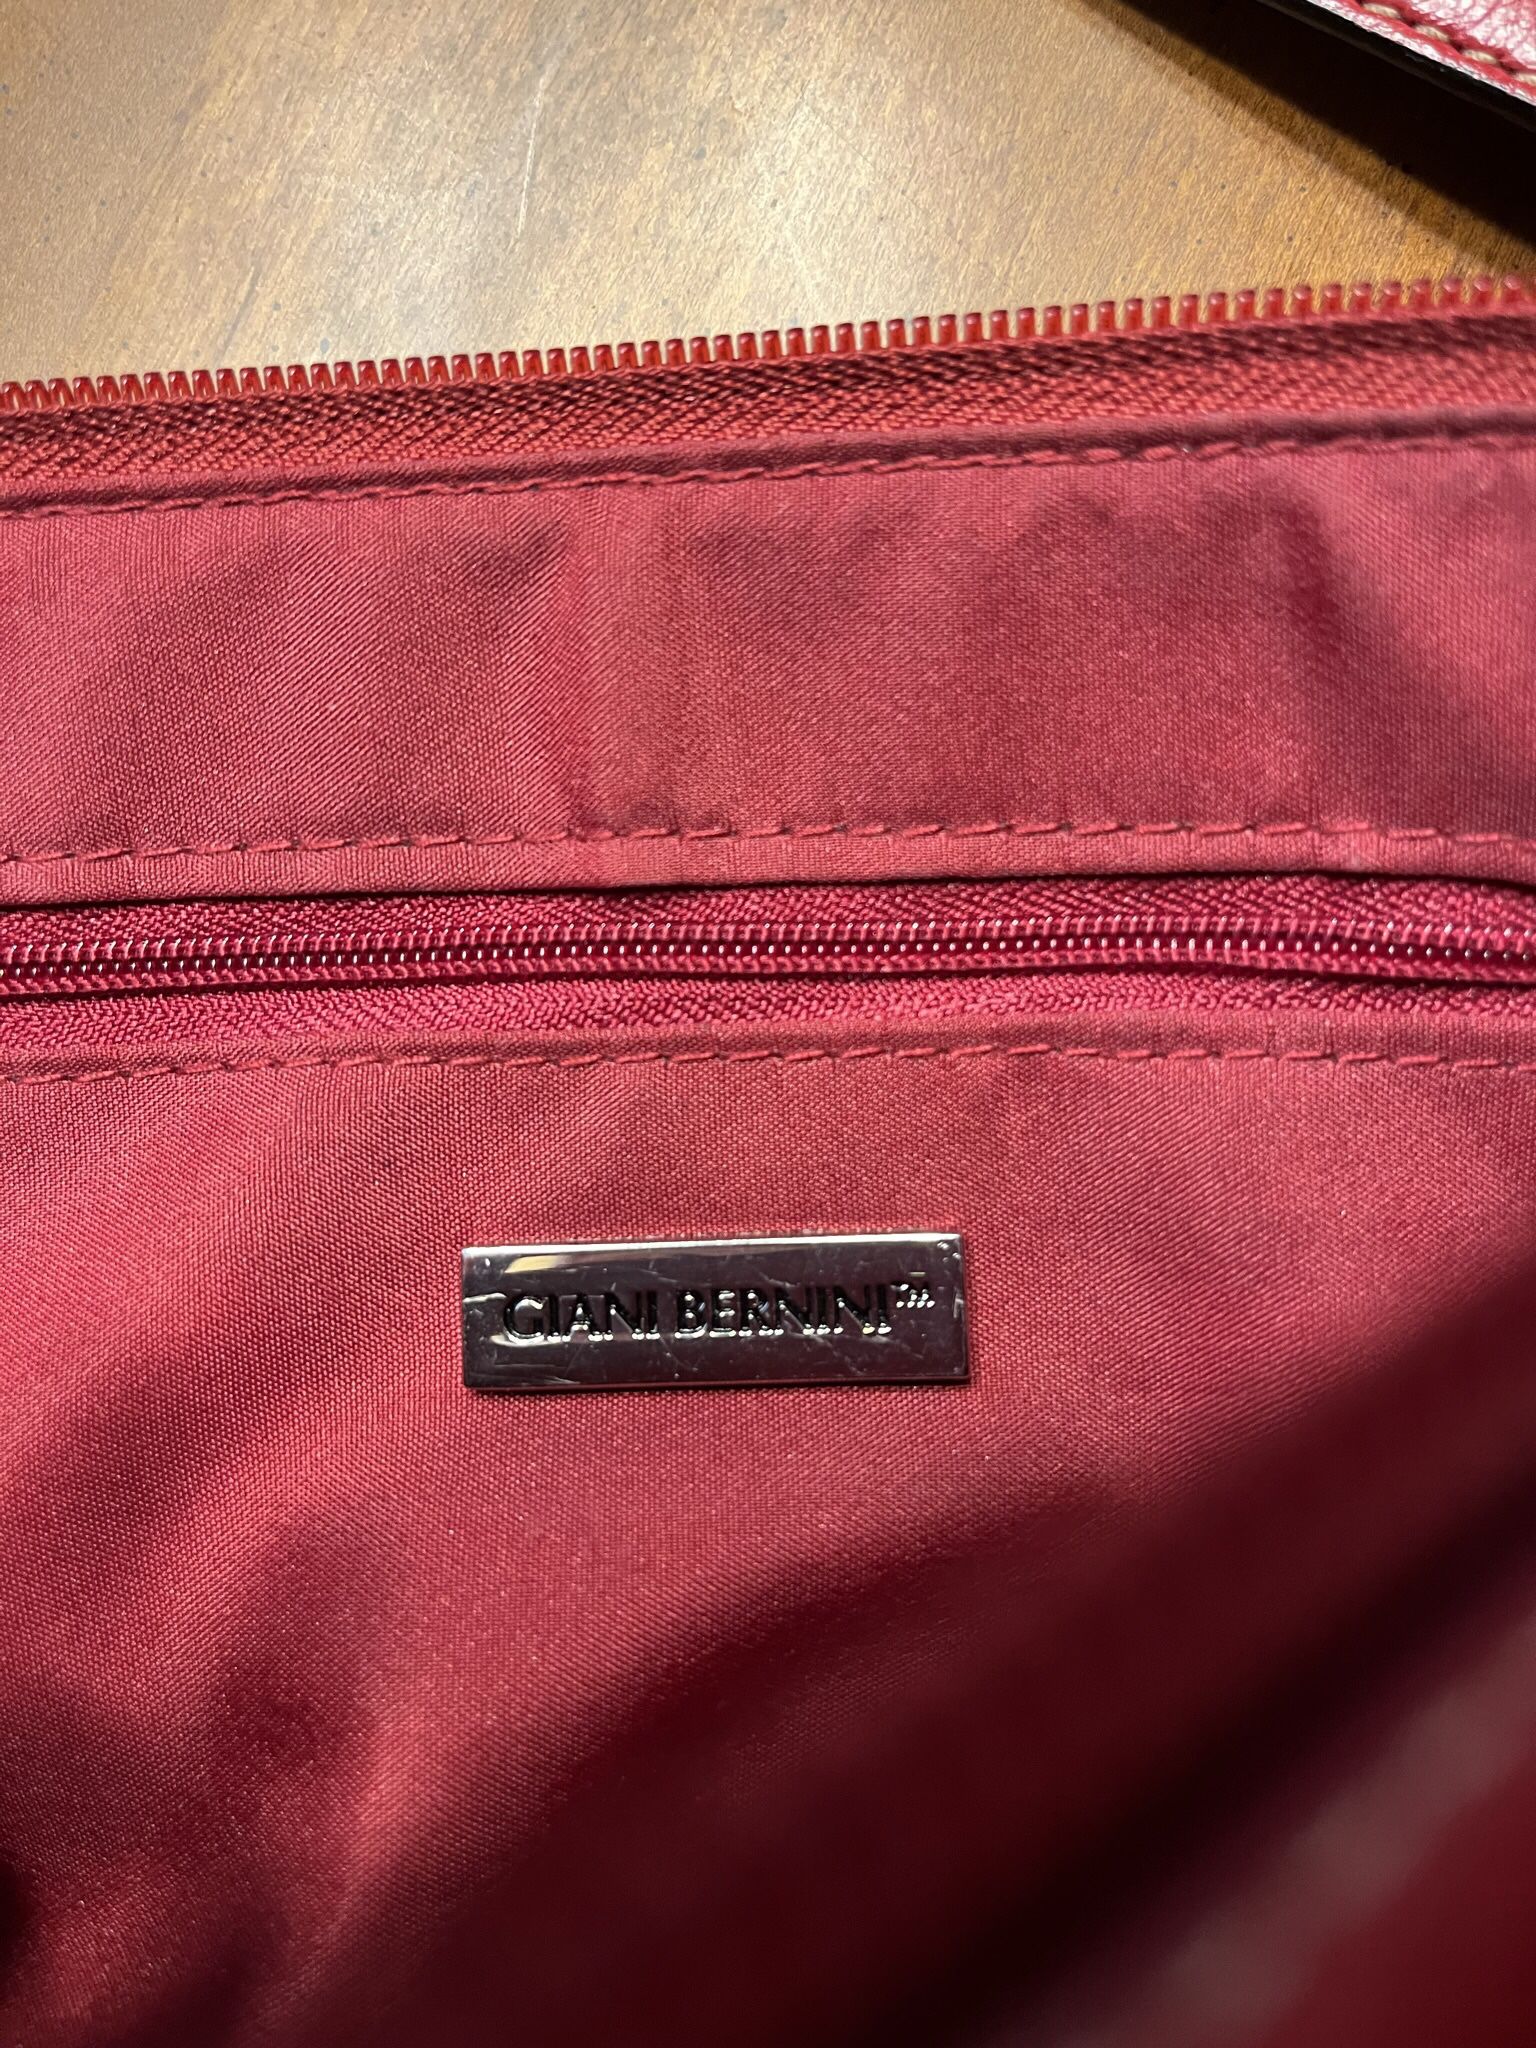 Giani Bernini Red Genuine Leather Satchel Handbag Shoulder Bag for Sale in  No Fort Myers, FL - OfferUp